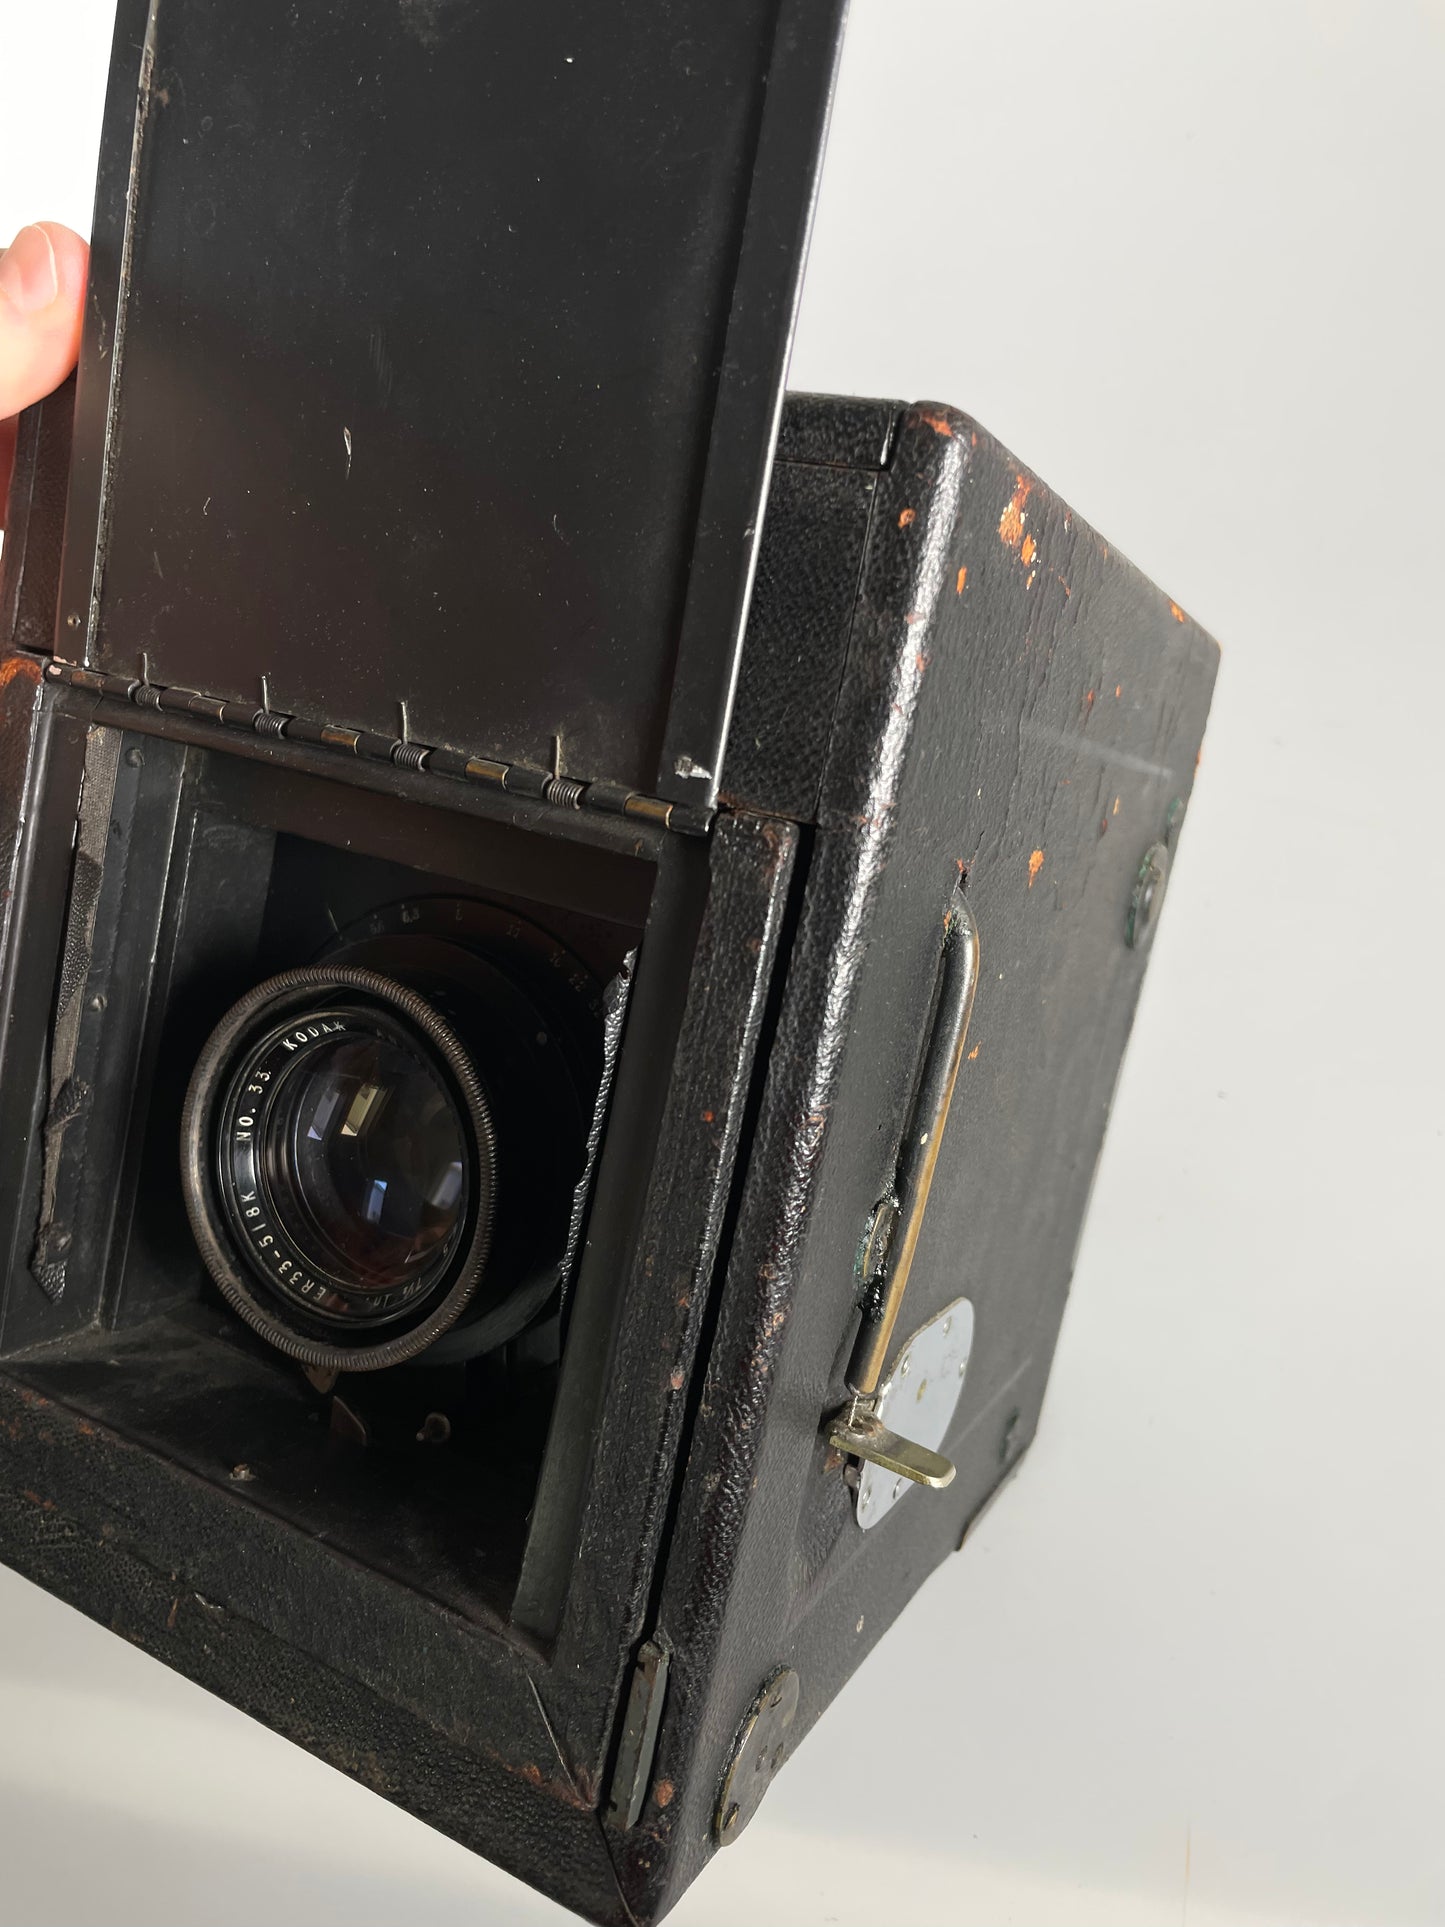 Graflex RB Series D 4x5 converted to Super D SLR Camera w/ Kodak 7 1/2 inch f4.5 anastigmat